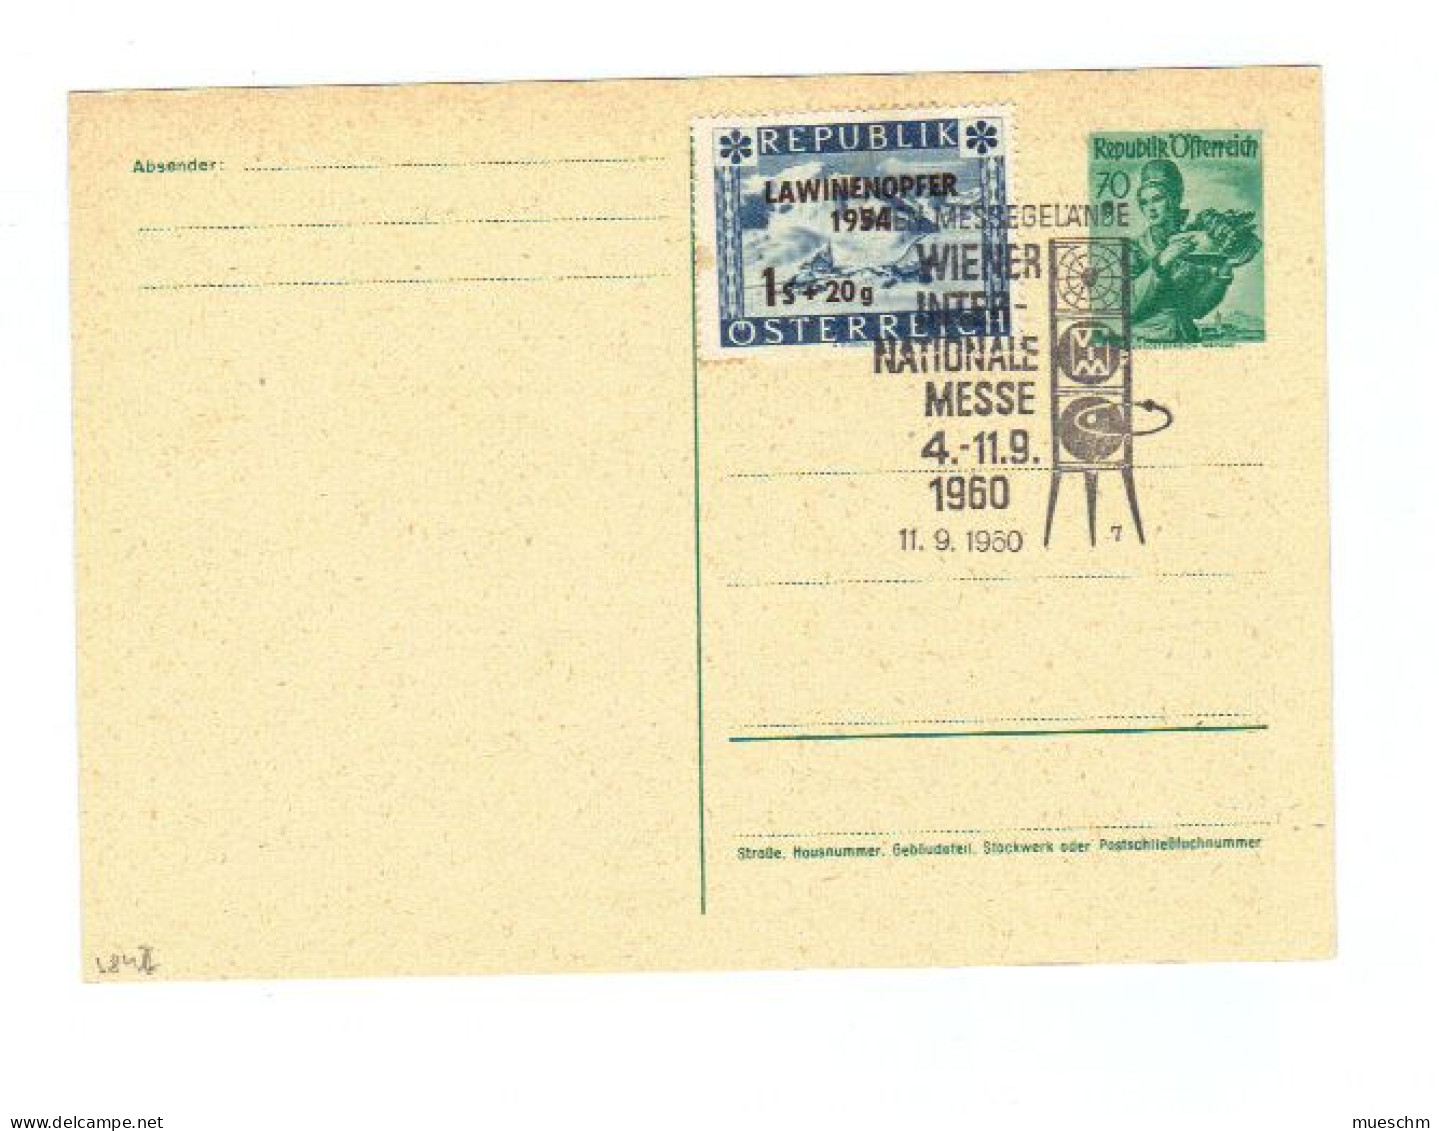 Österreich, 1960, Ungebr.Postkarte Mit Eingedr. 70Gr./Trachten Und Zusatz 1S+20g/Lawinen Unglück1954 U. SStpl. (11794W) - Cartes Postales